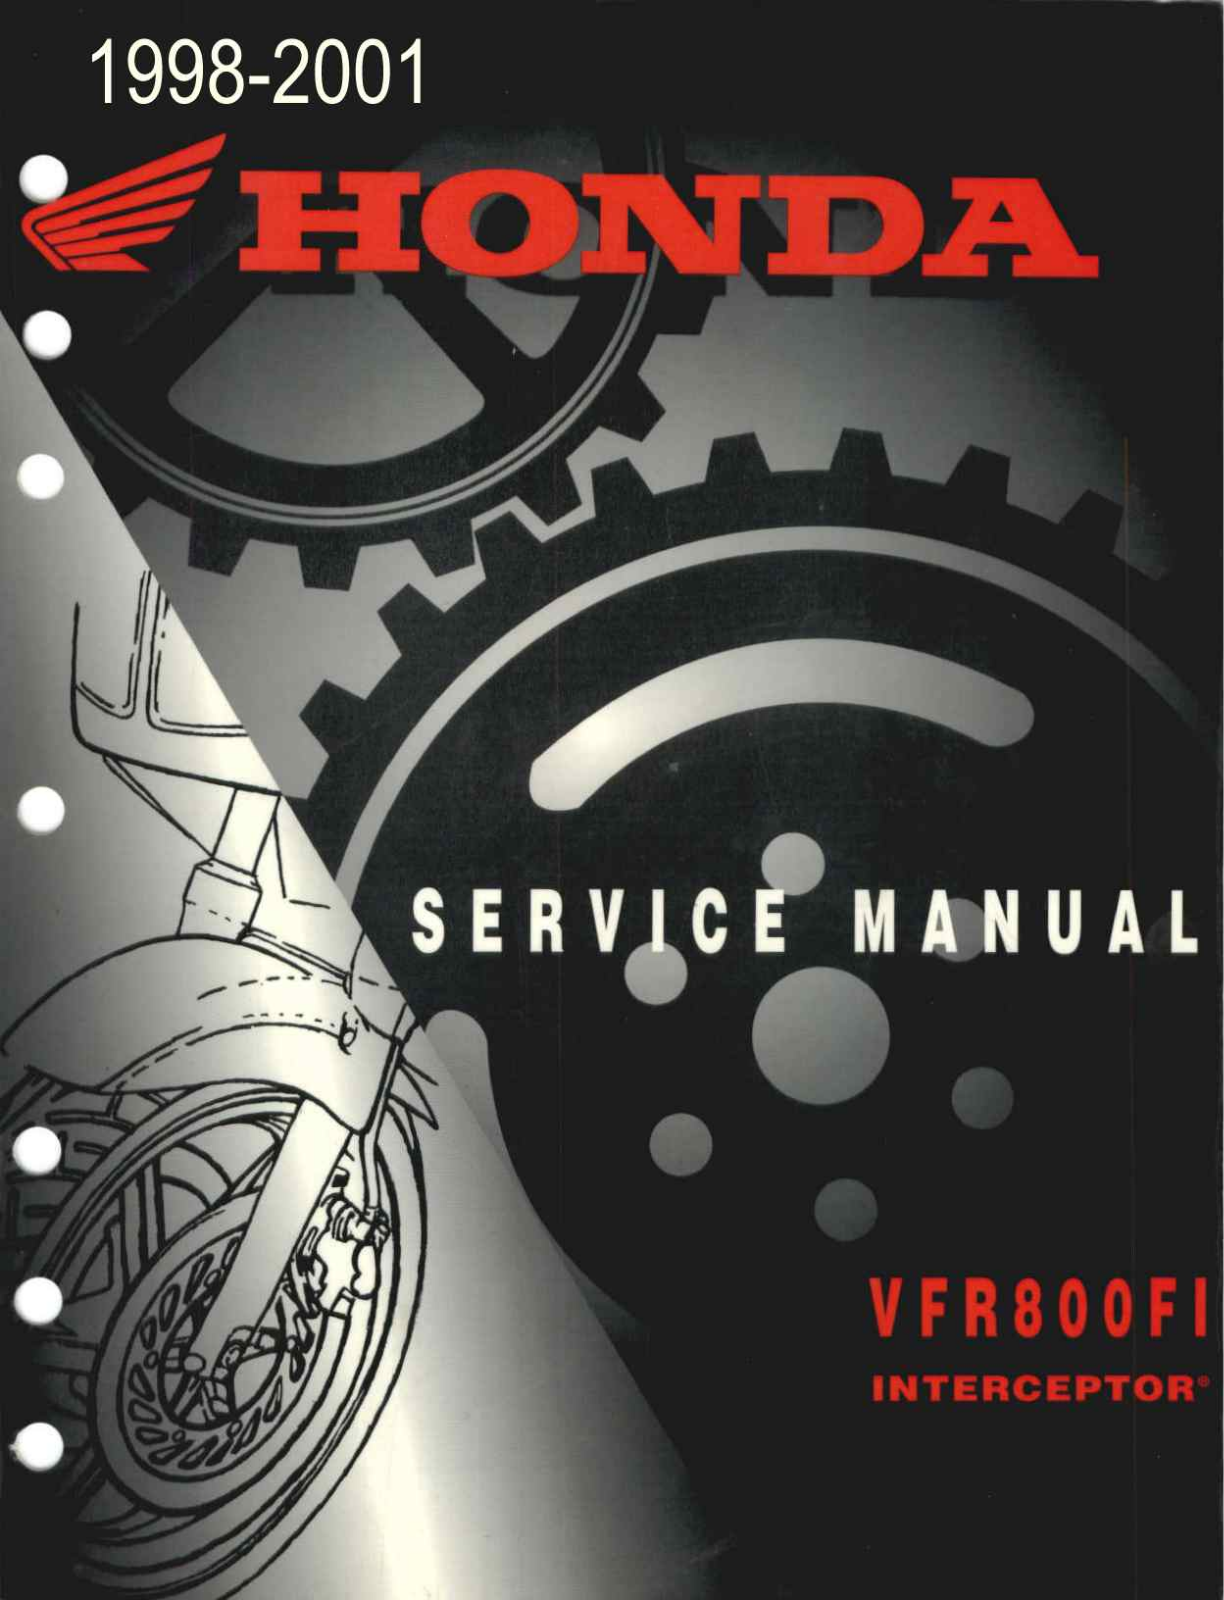 Honda VFR800FI Interceptor '98-01 Service Manual